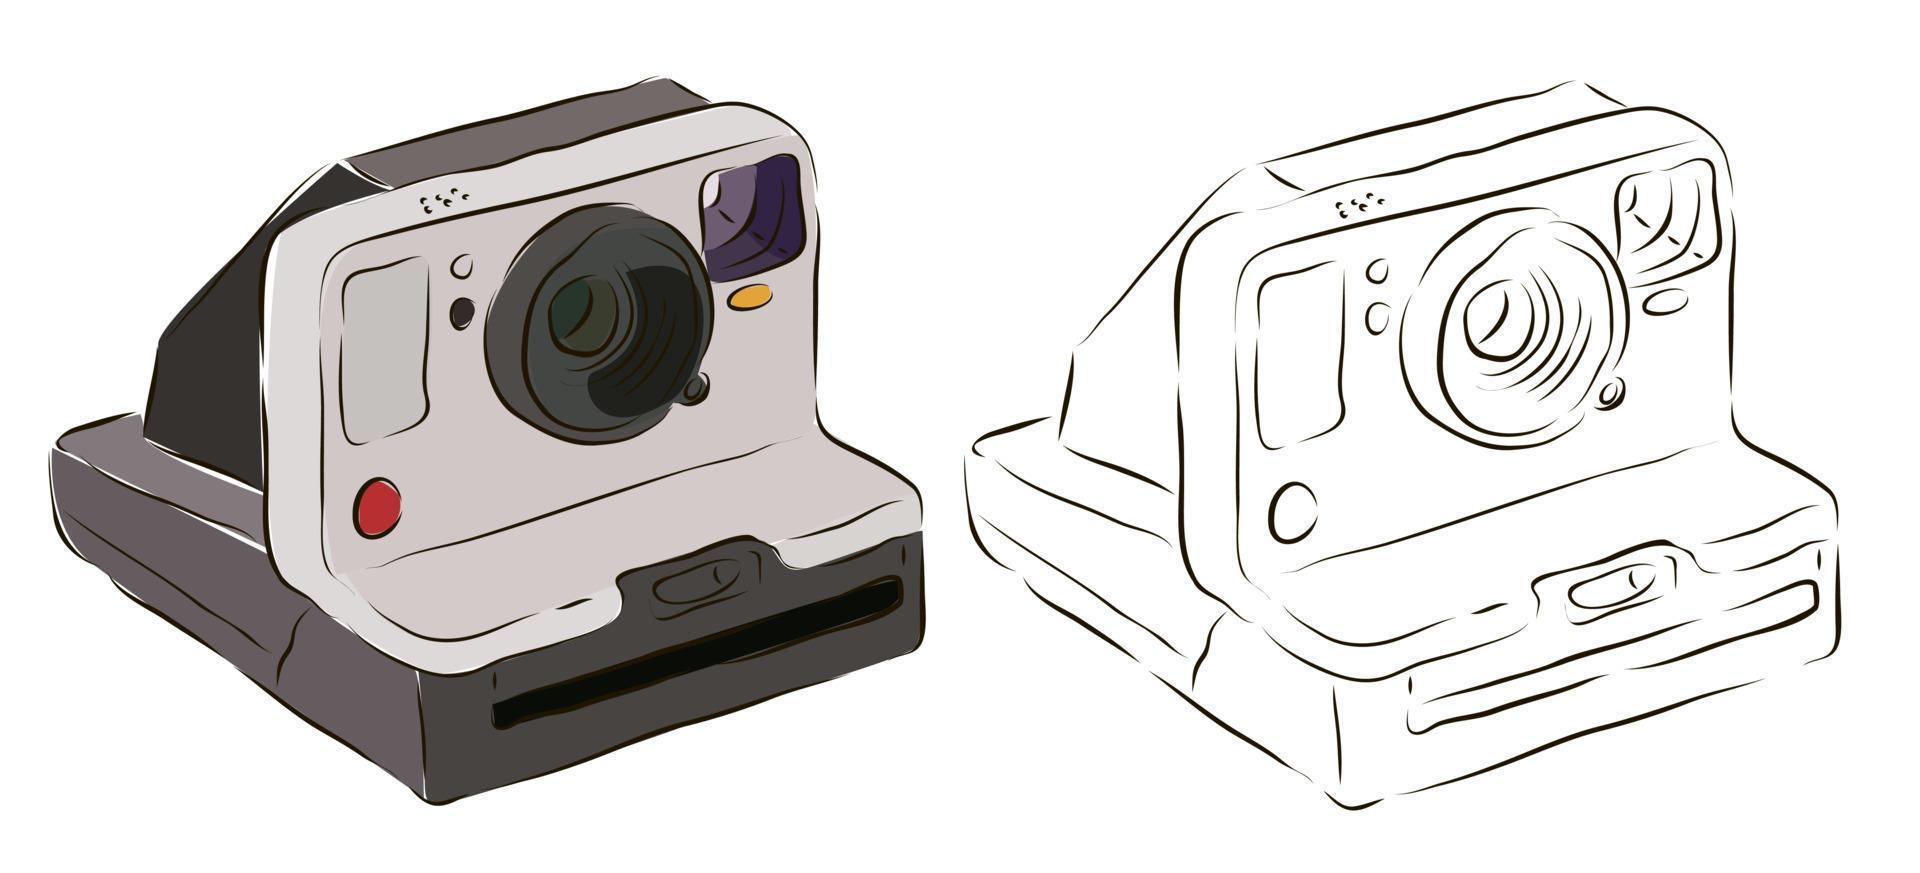 uma velha câmera polaroid em cores e em preto e branco. o conceito da velha técnica de polaroid. vetor